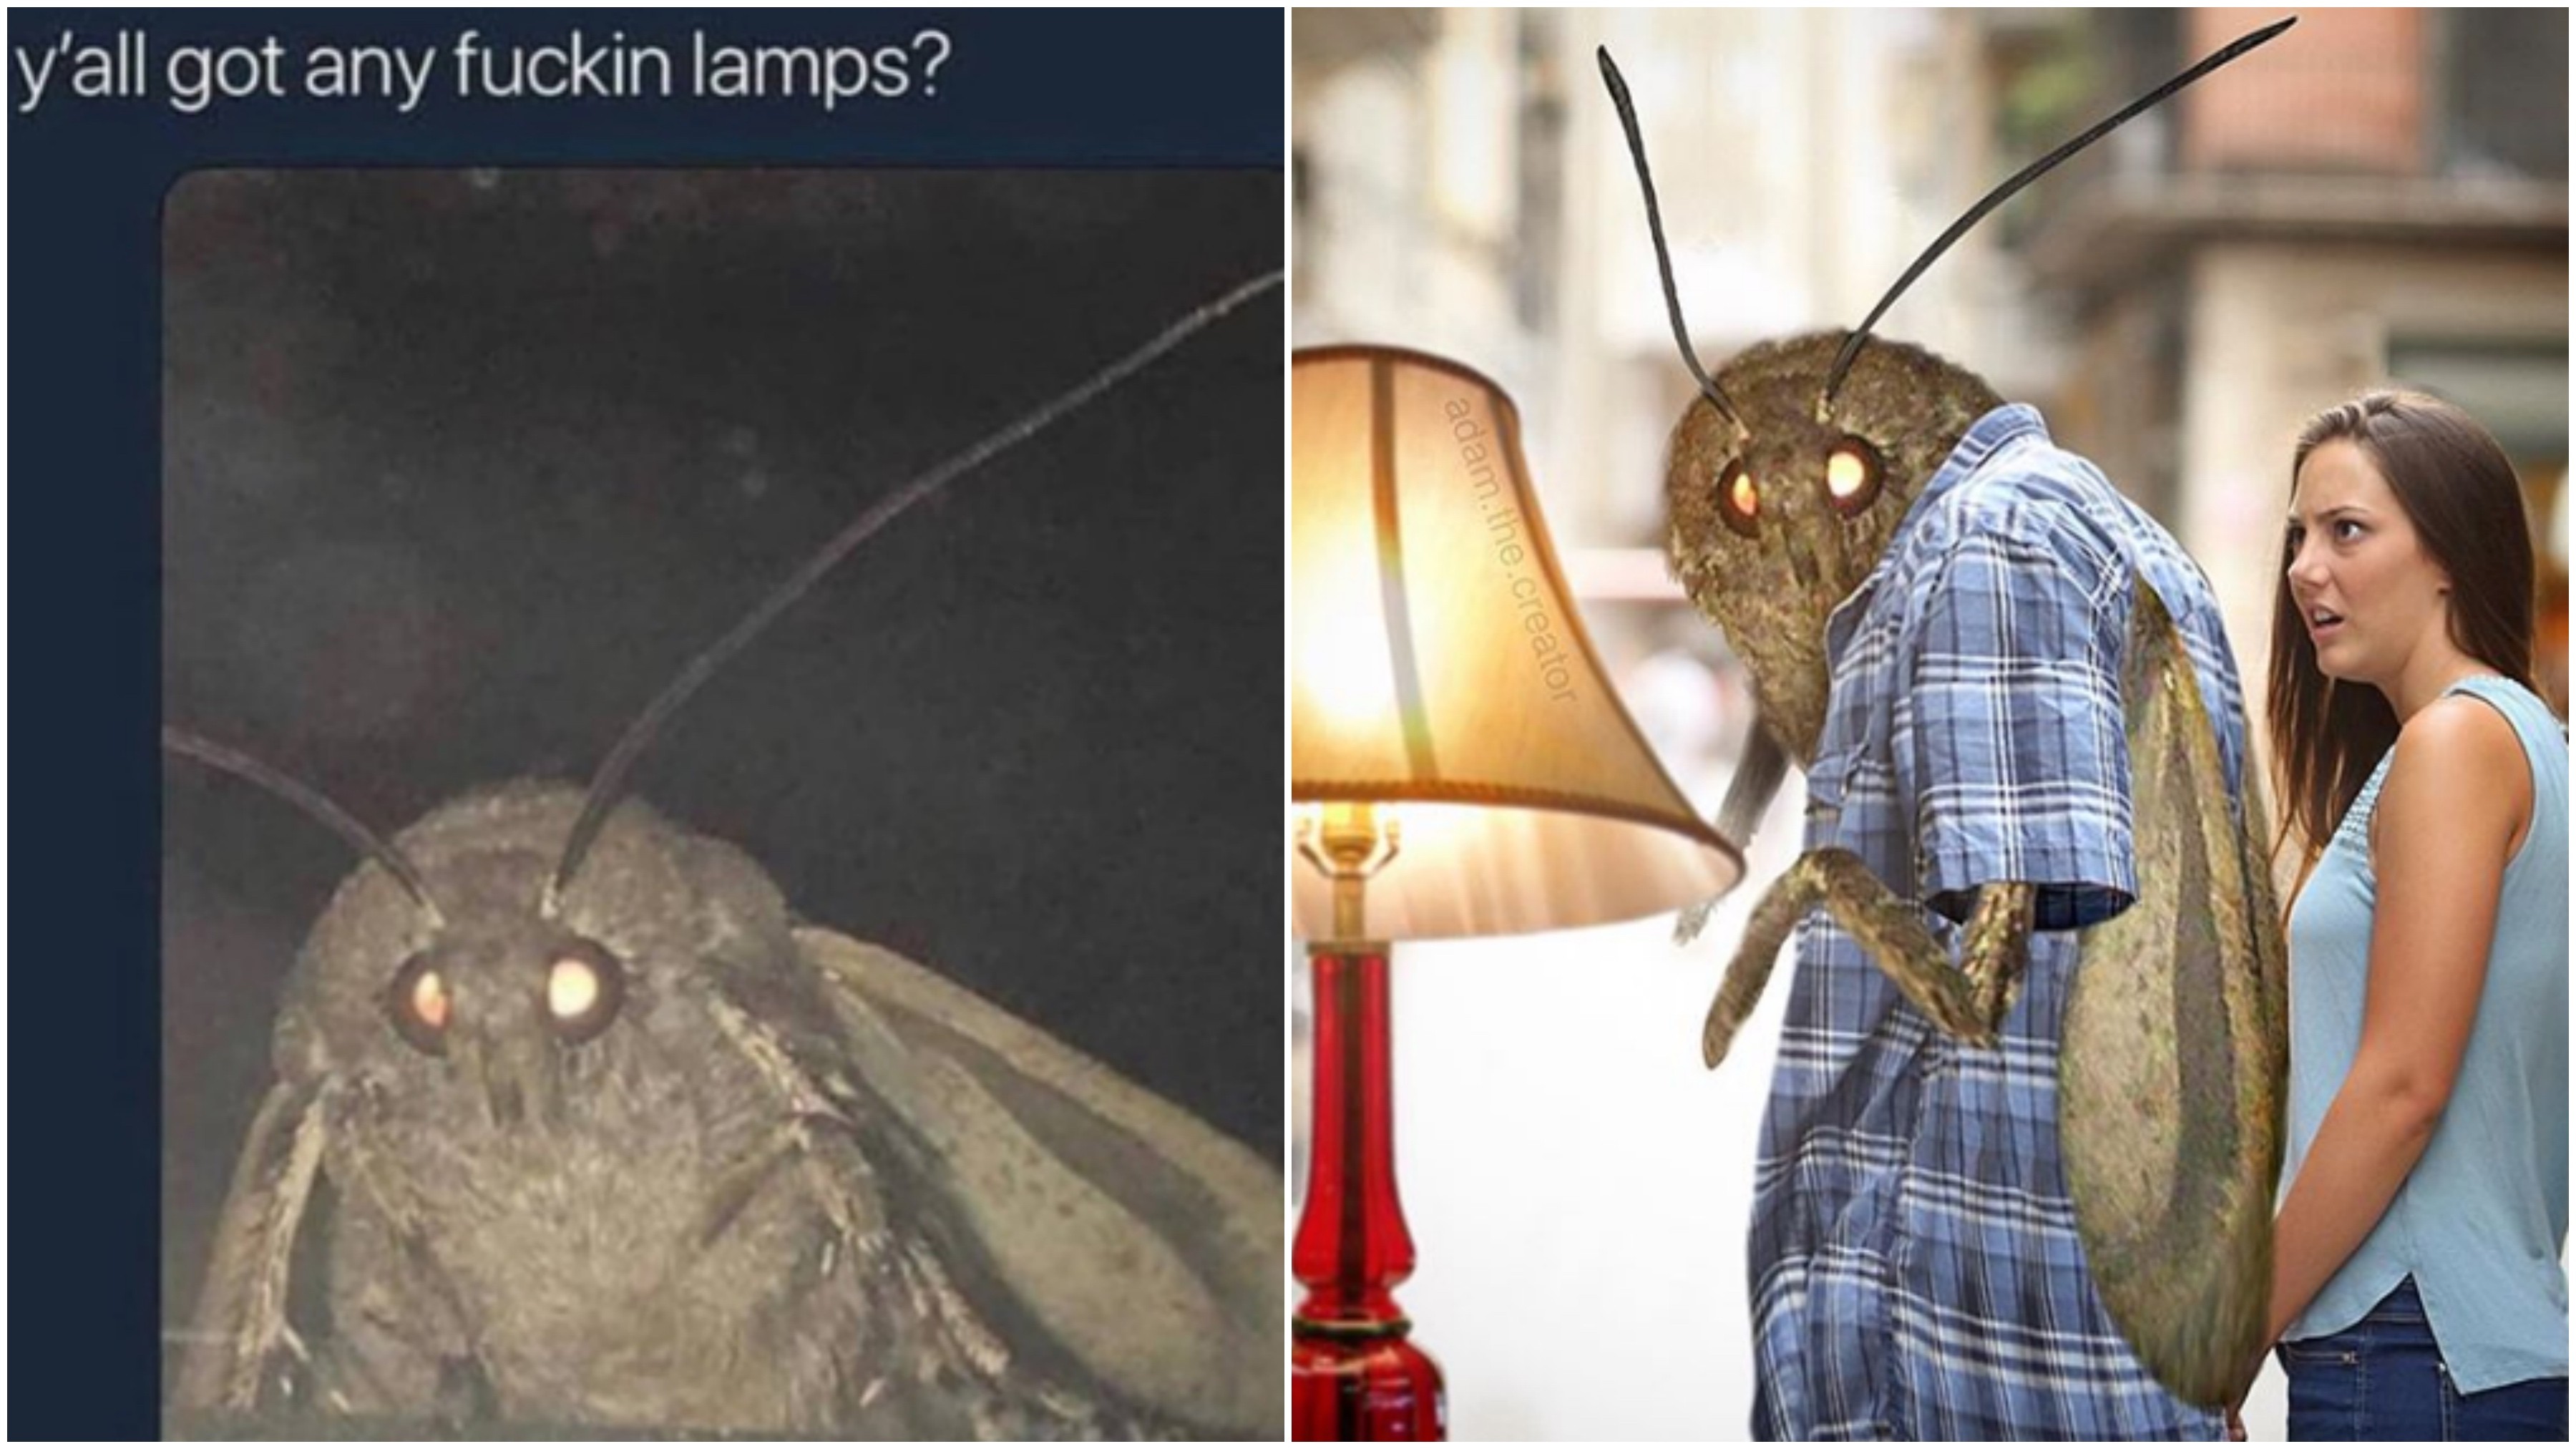 moth meme